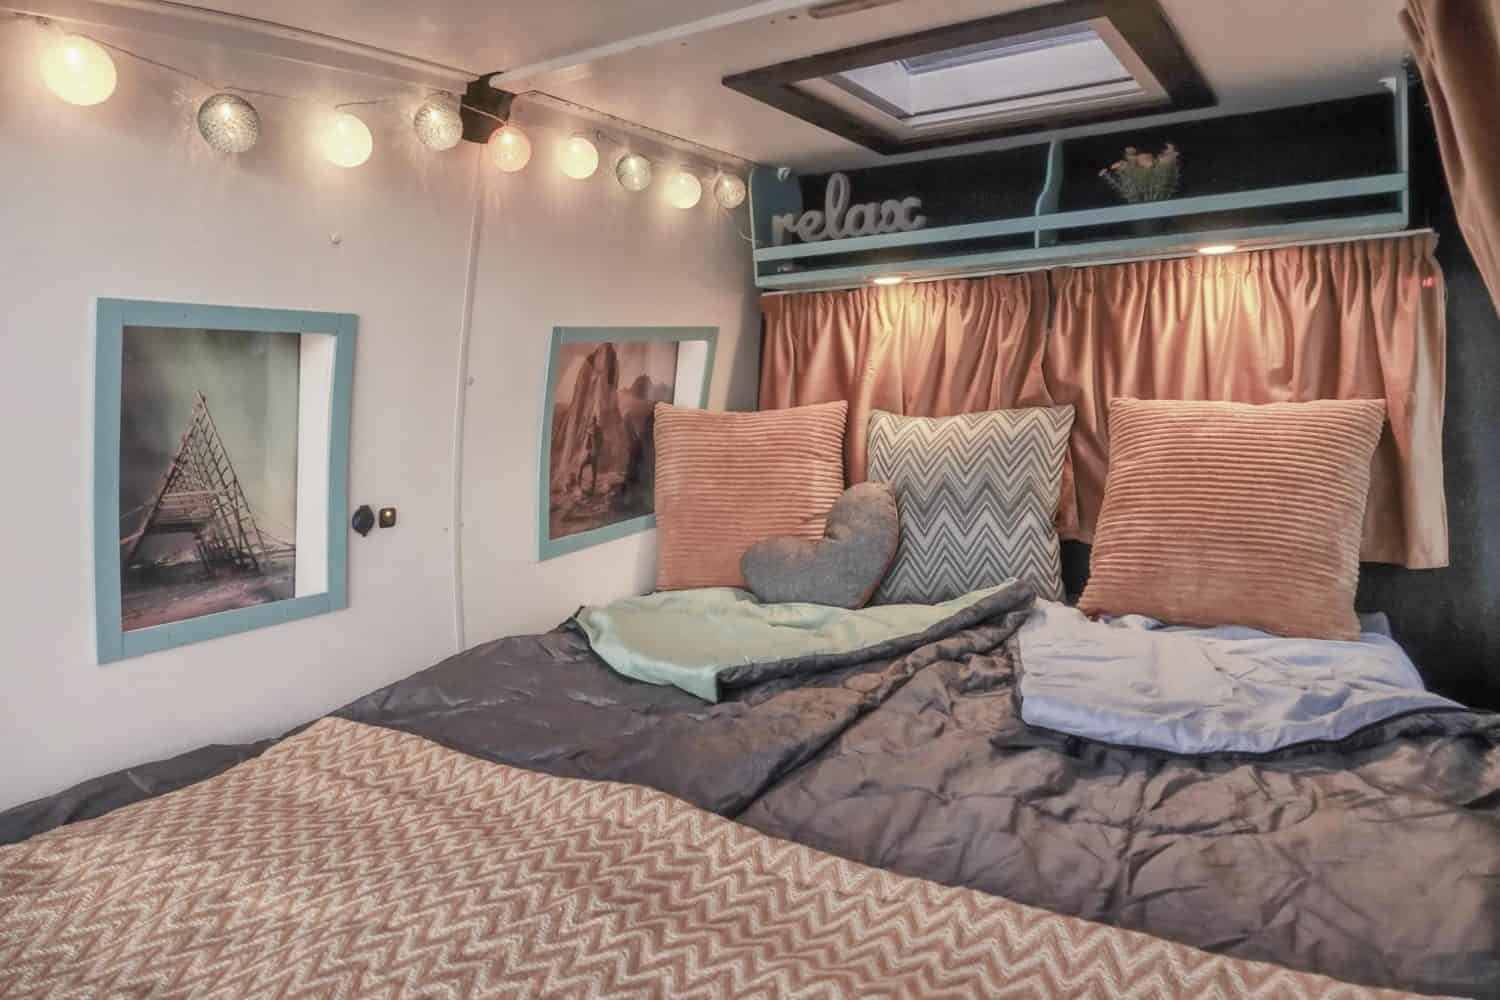 Campervan Mozart bedroom